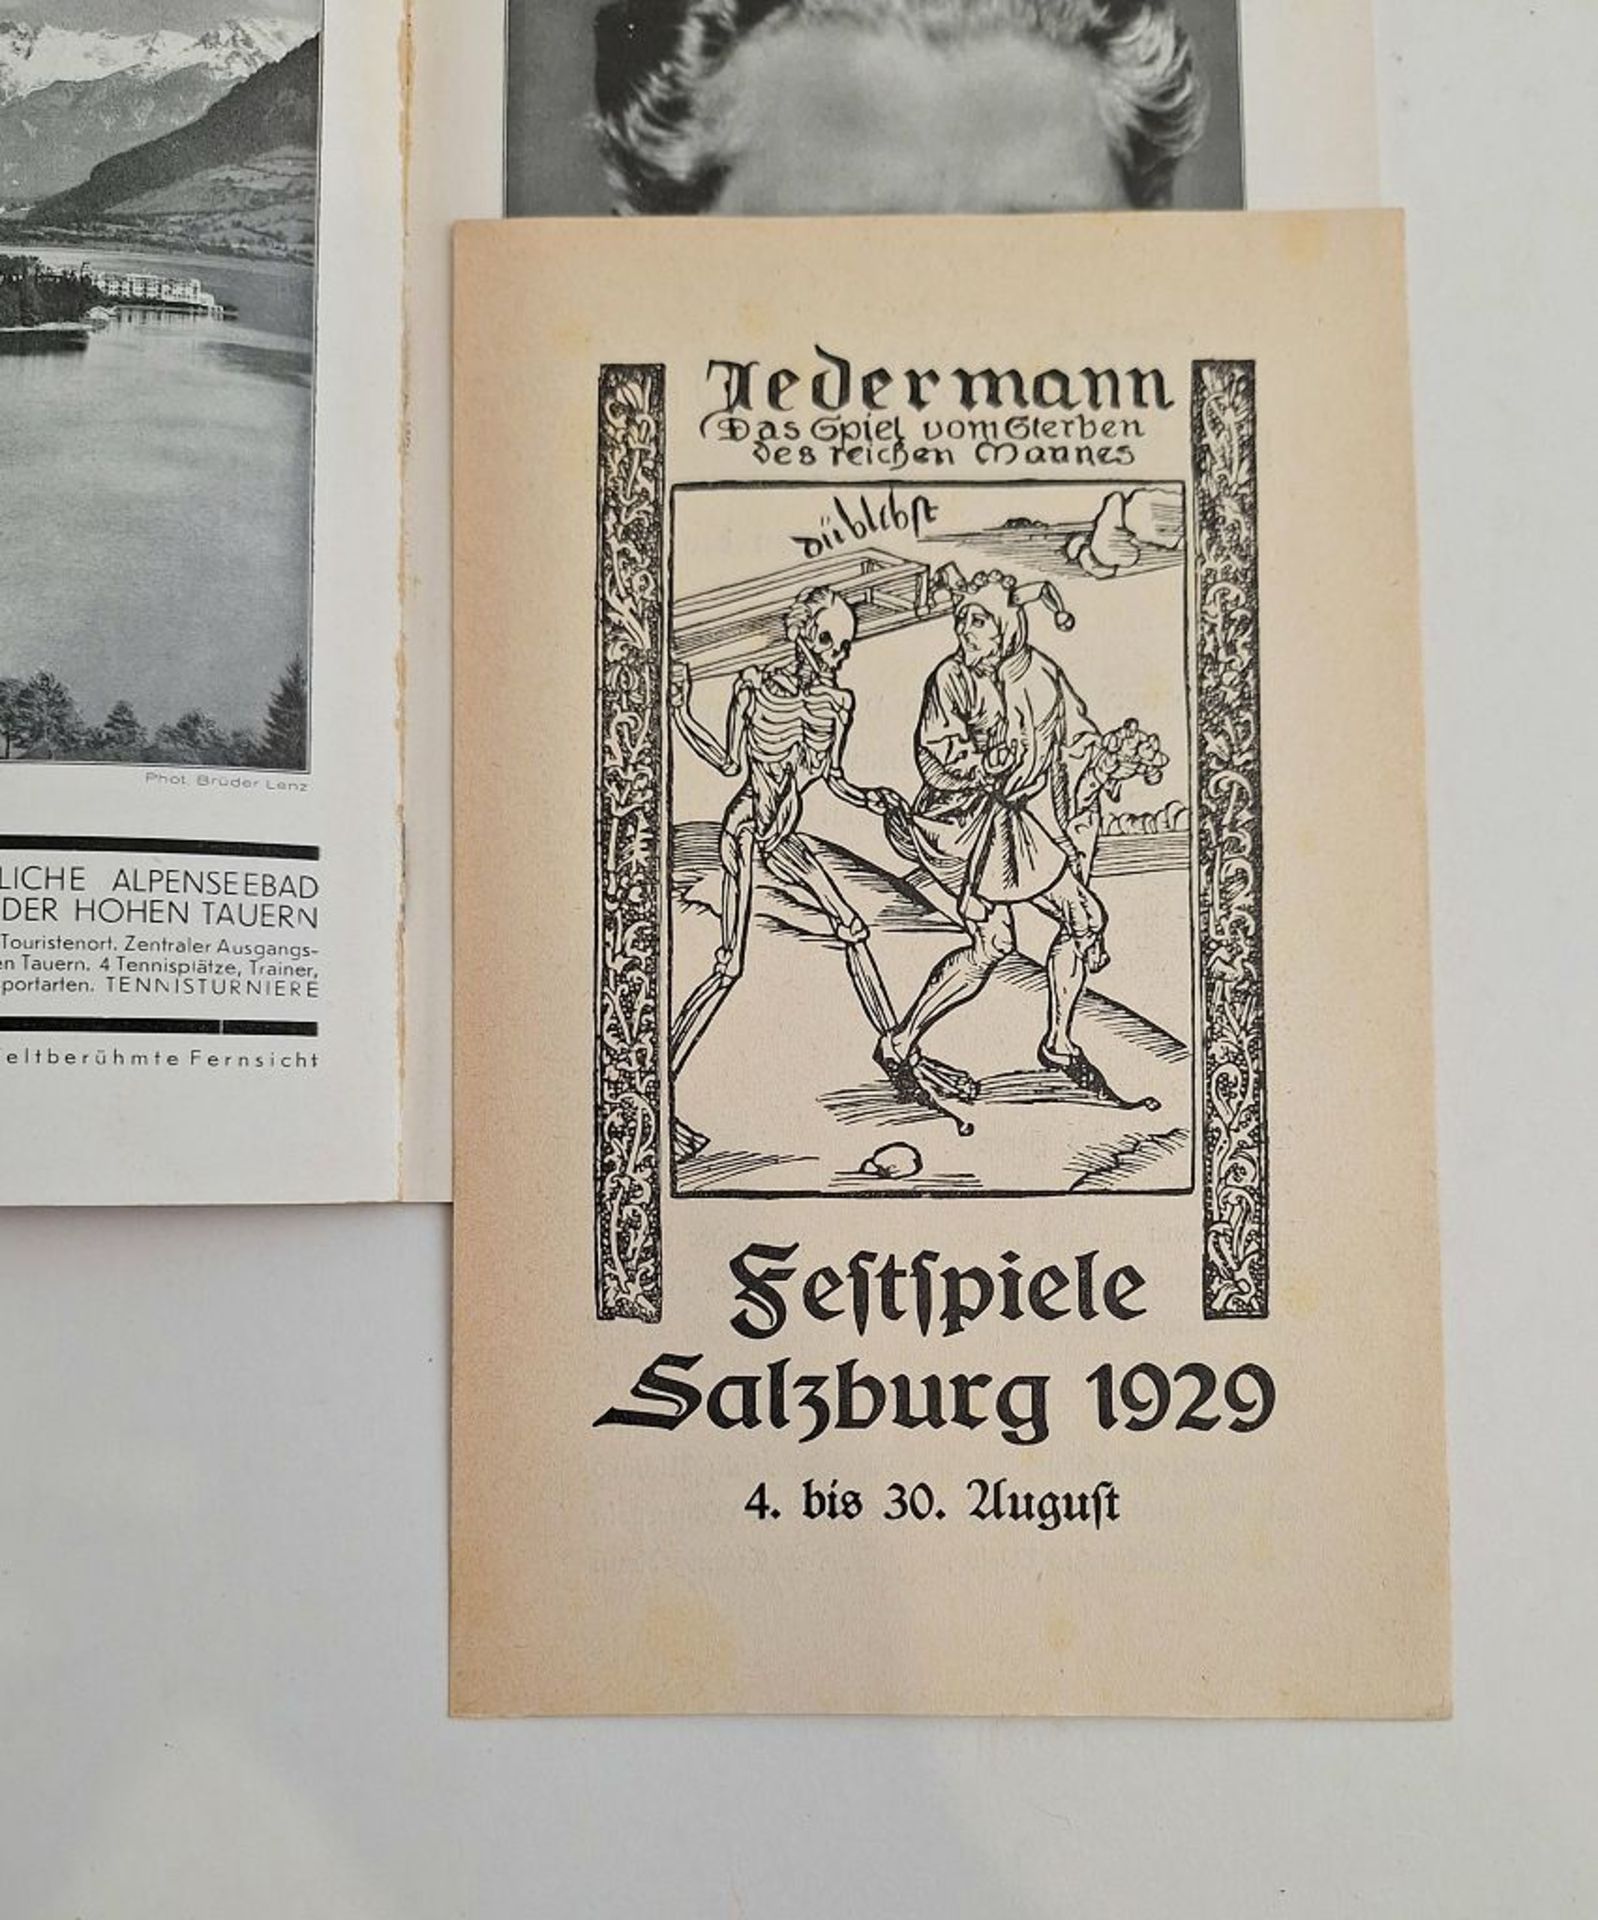 Programm und Führer der Salzburger Festspiele 1929 - Bild 3 aus 4